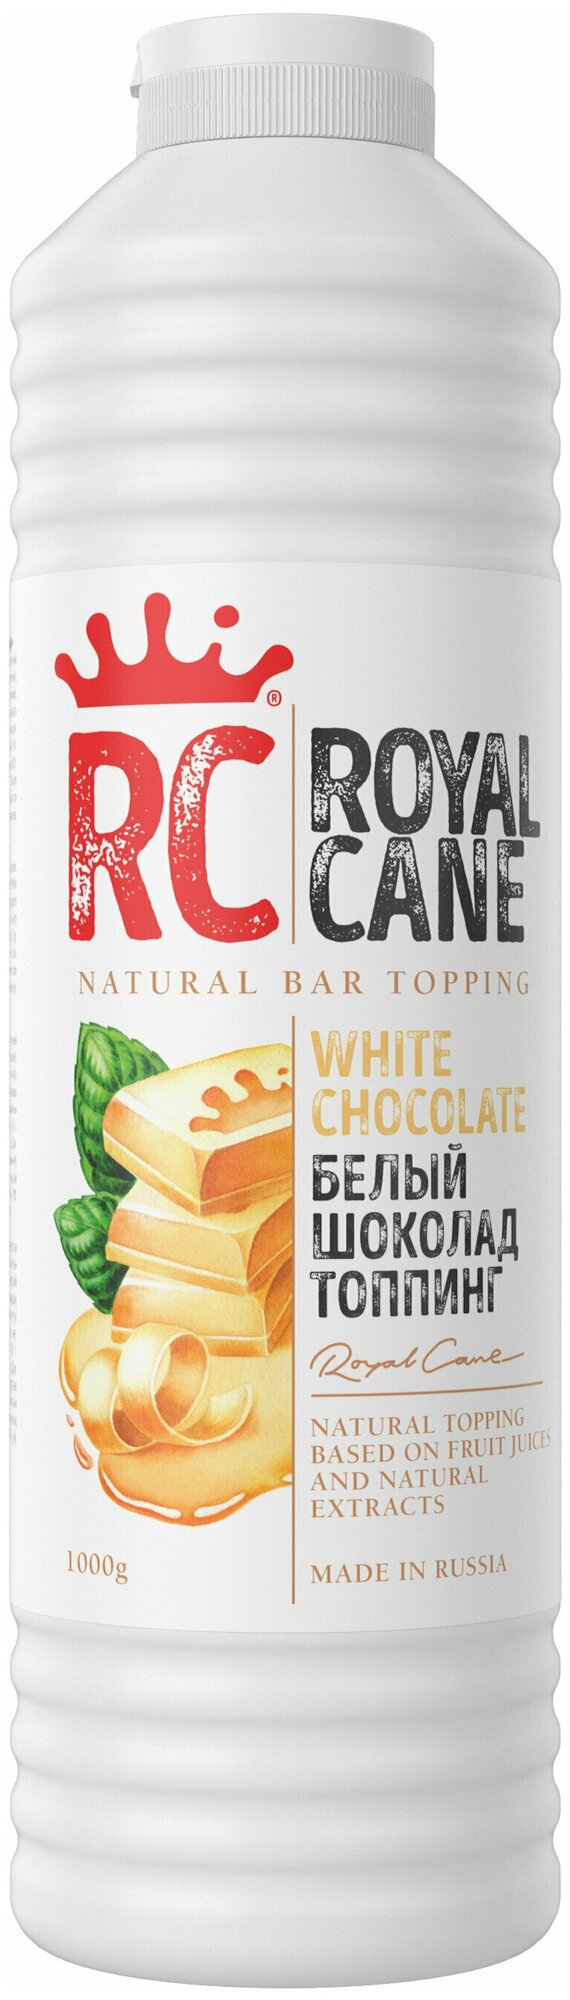 Топпинг Royal Cane "Белый Шоколад" 1 кг для кофе, десертов и мороженого.